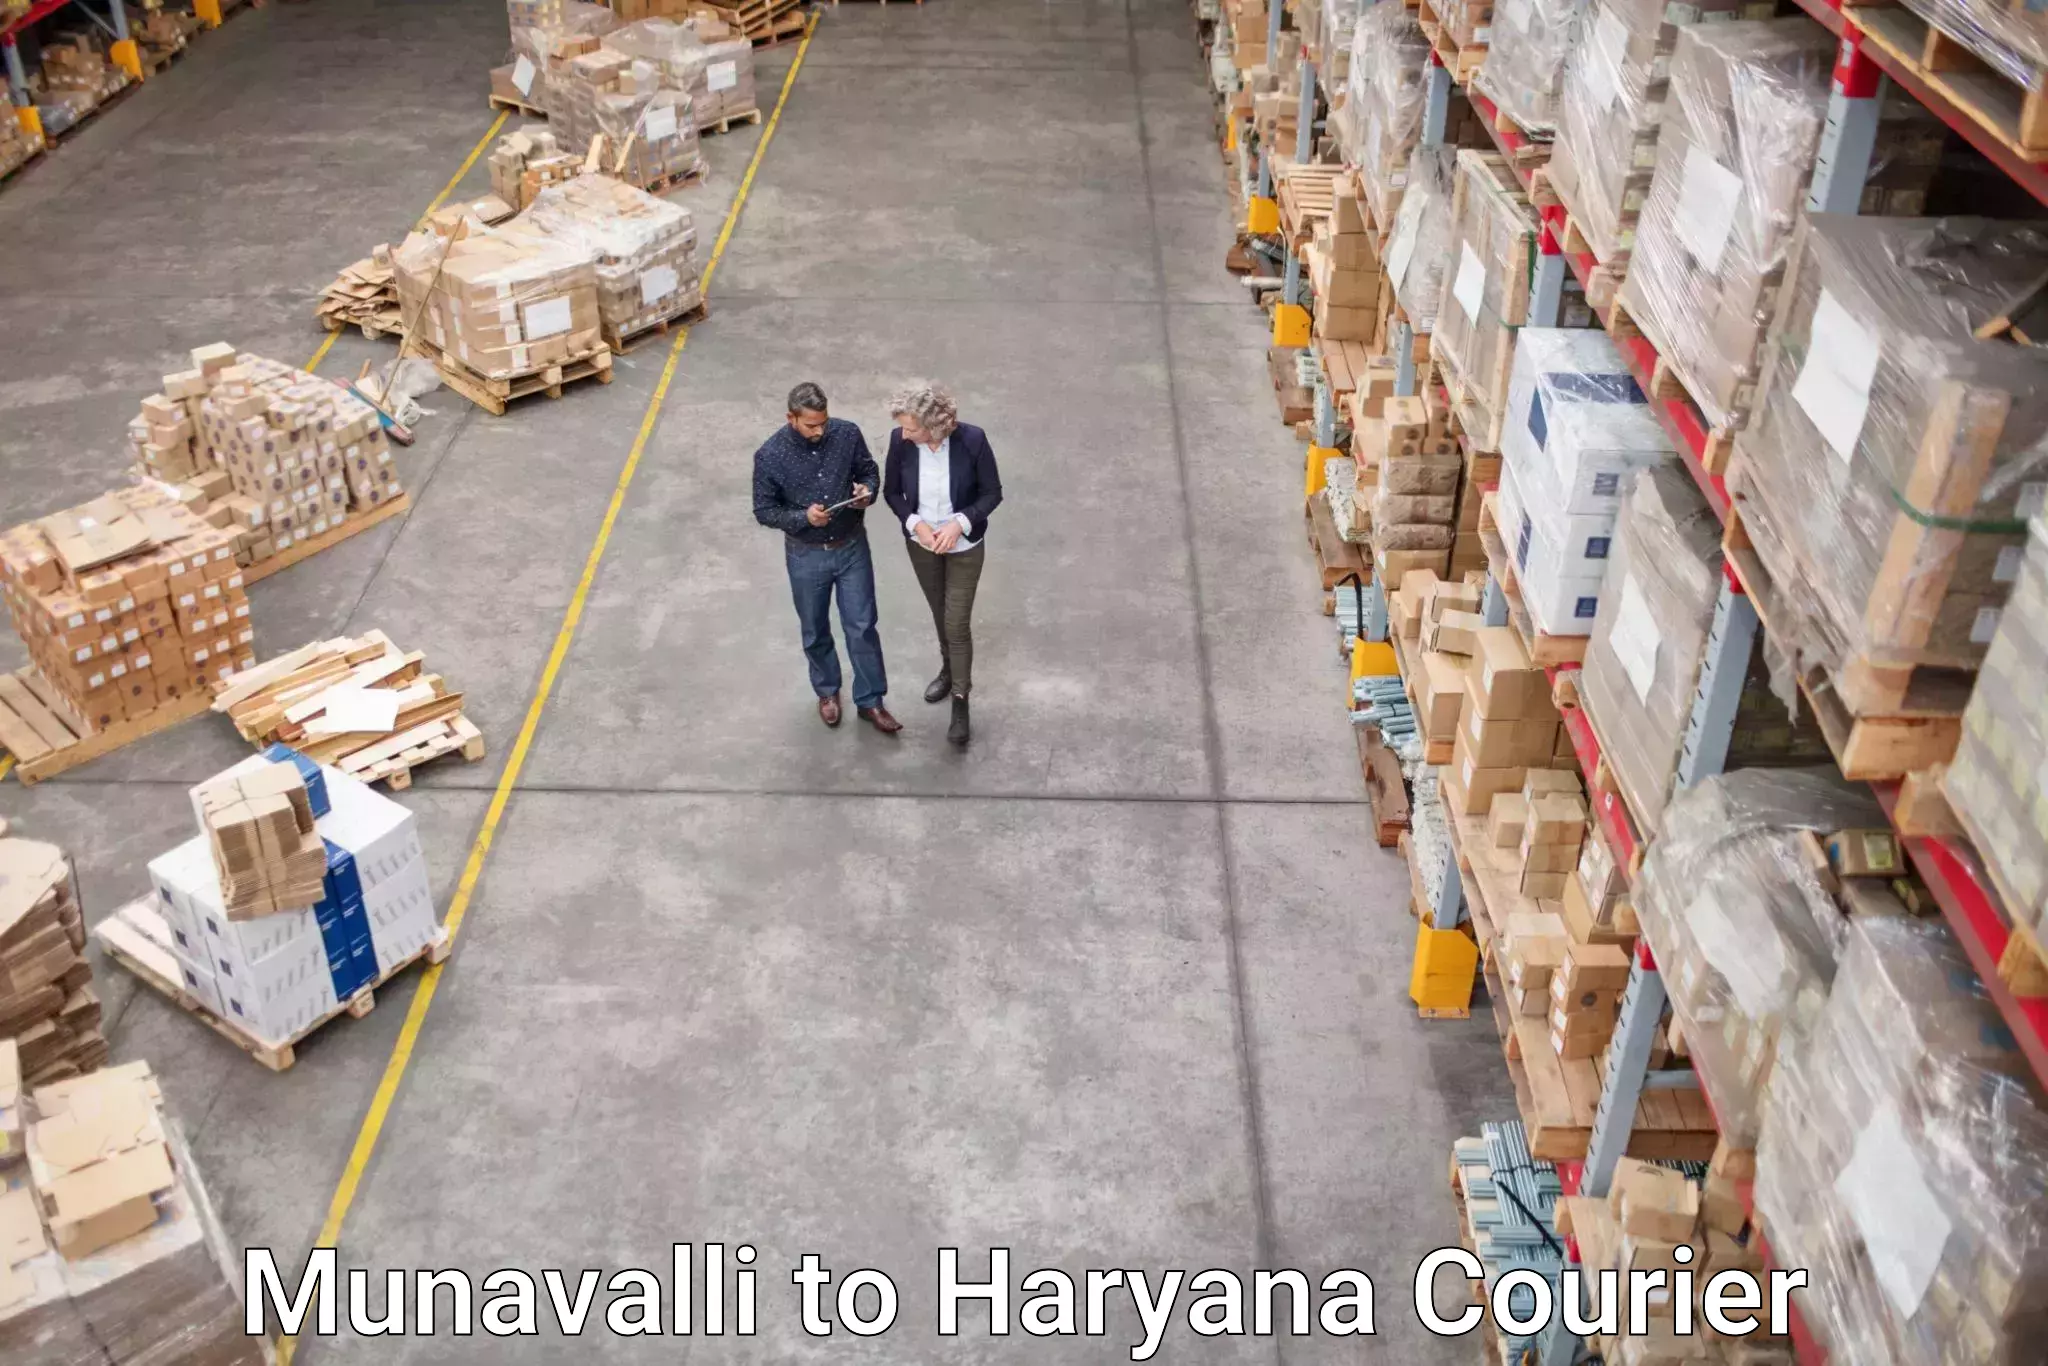 Digital courier platforms Munavalli to Ambala